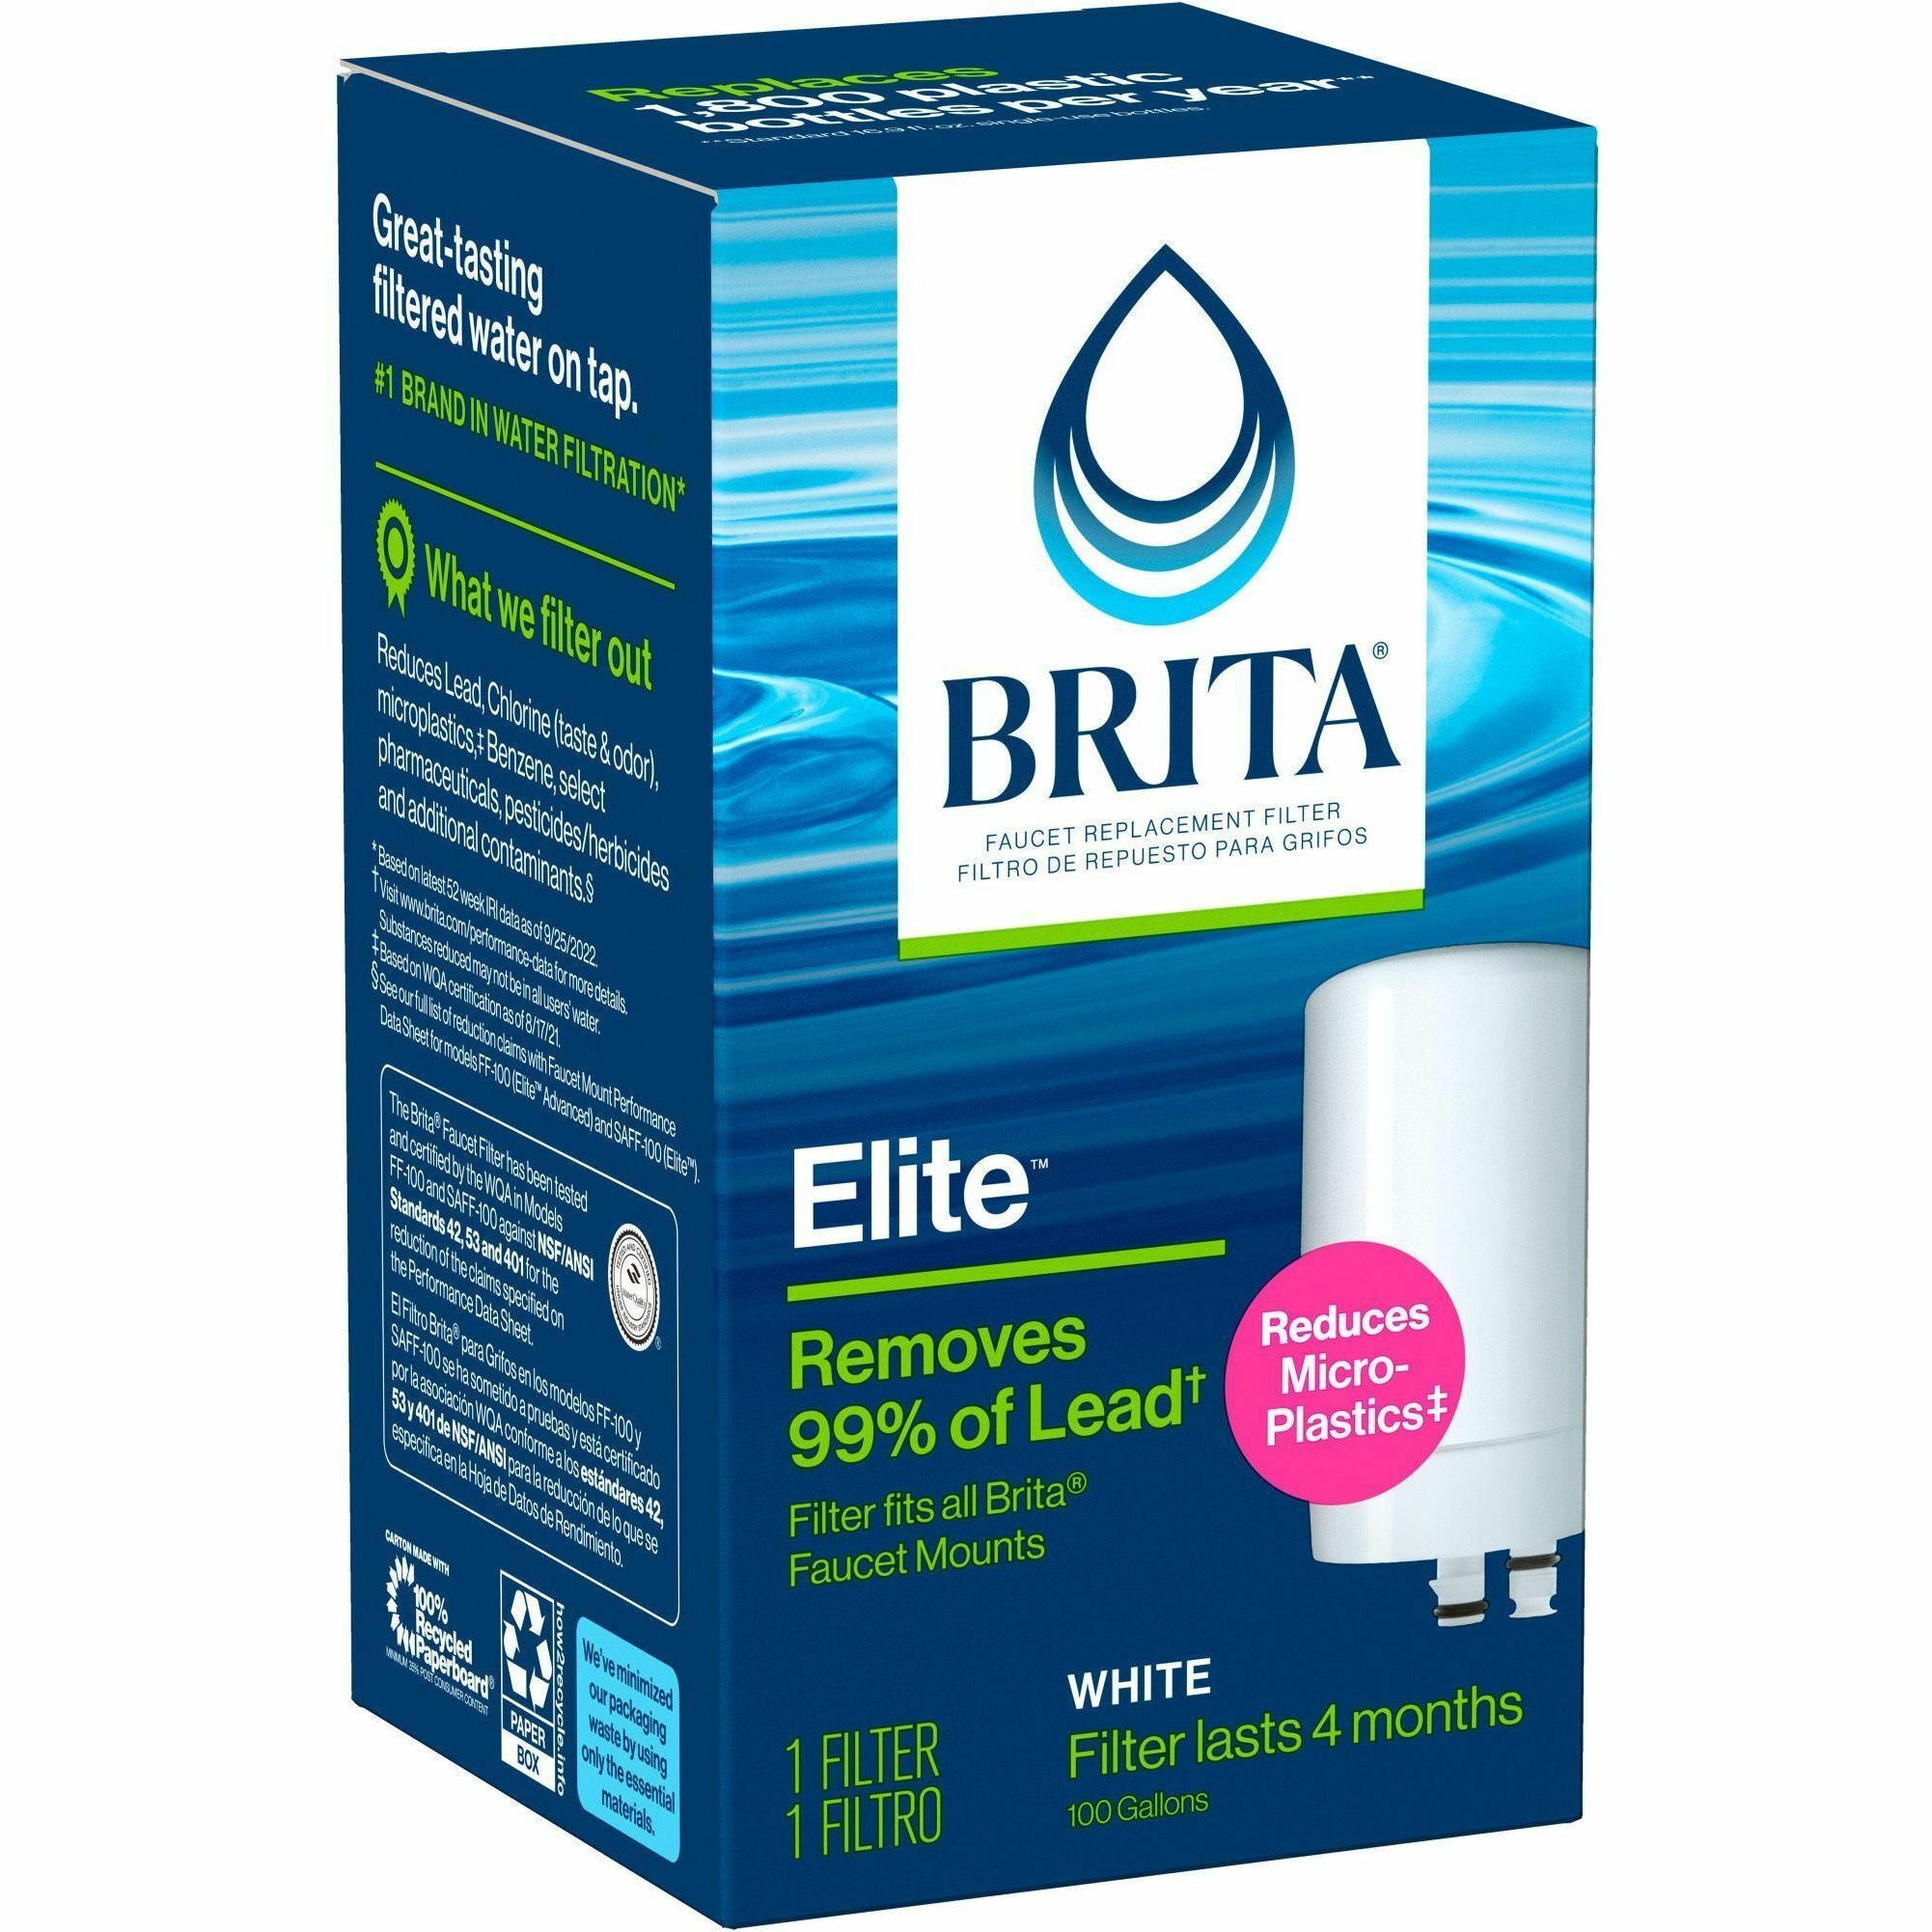 Brita Tap Water System Faucet Filter Change Reminder BPA Free Basic White